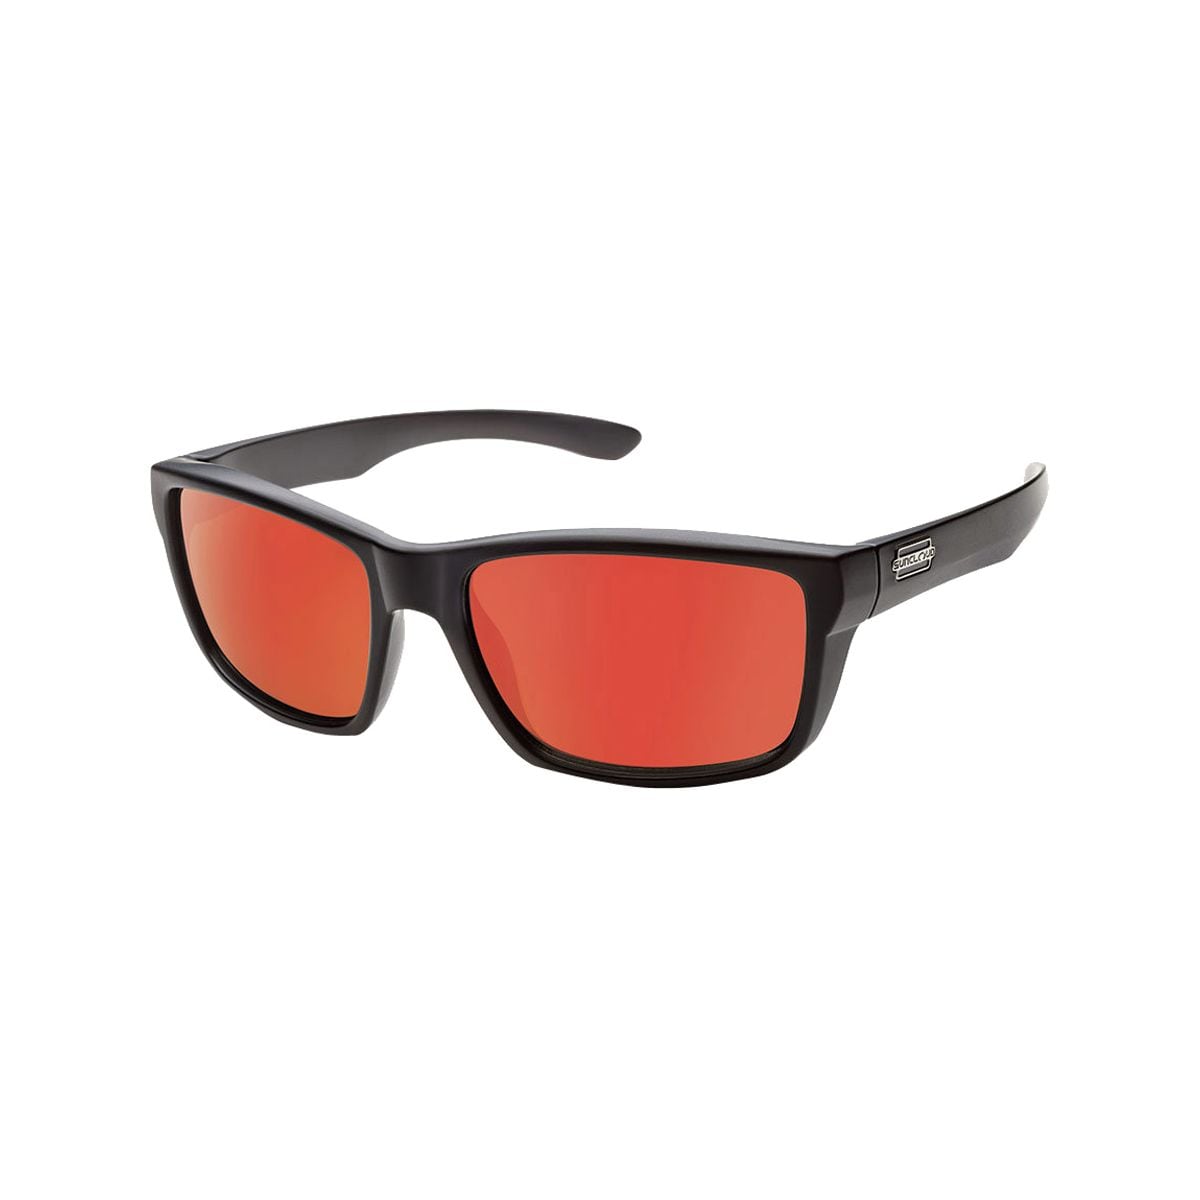 Поляризованные солнцезащитные очки mayor Suncloud Polarized Optics, цвет matte black/red mirror